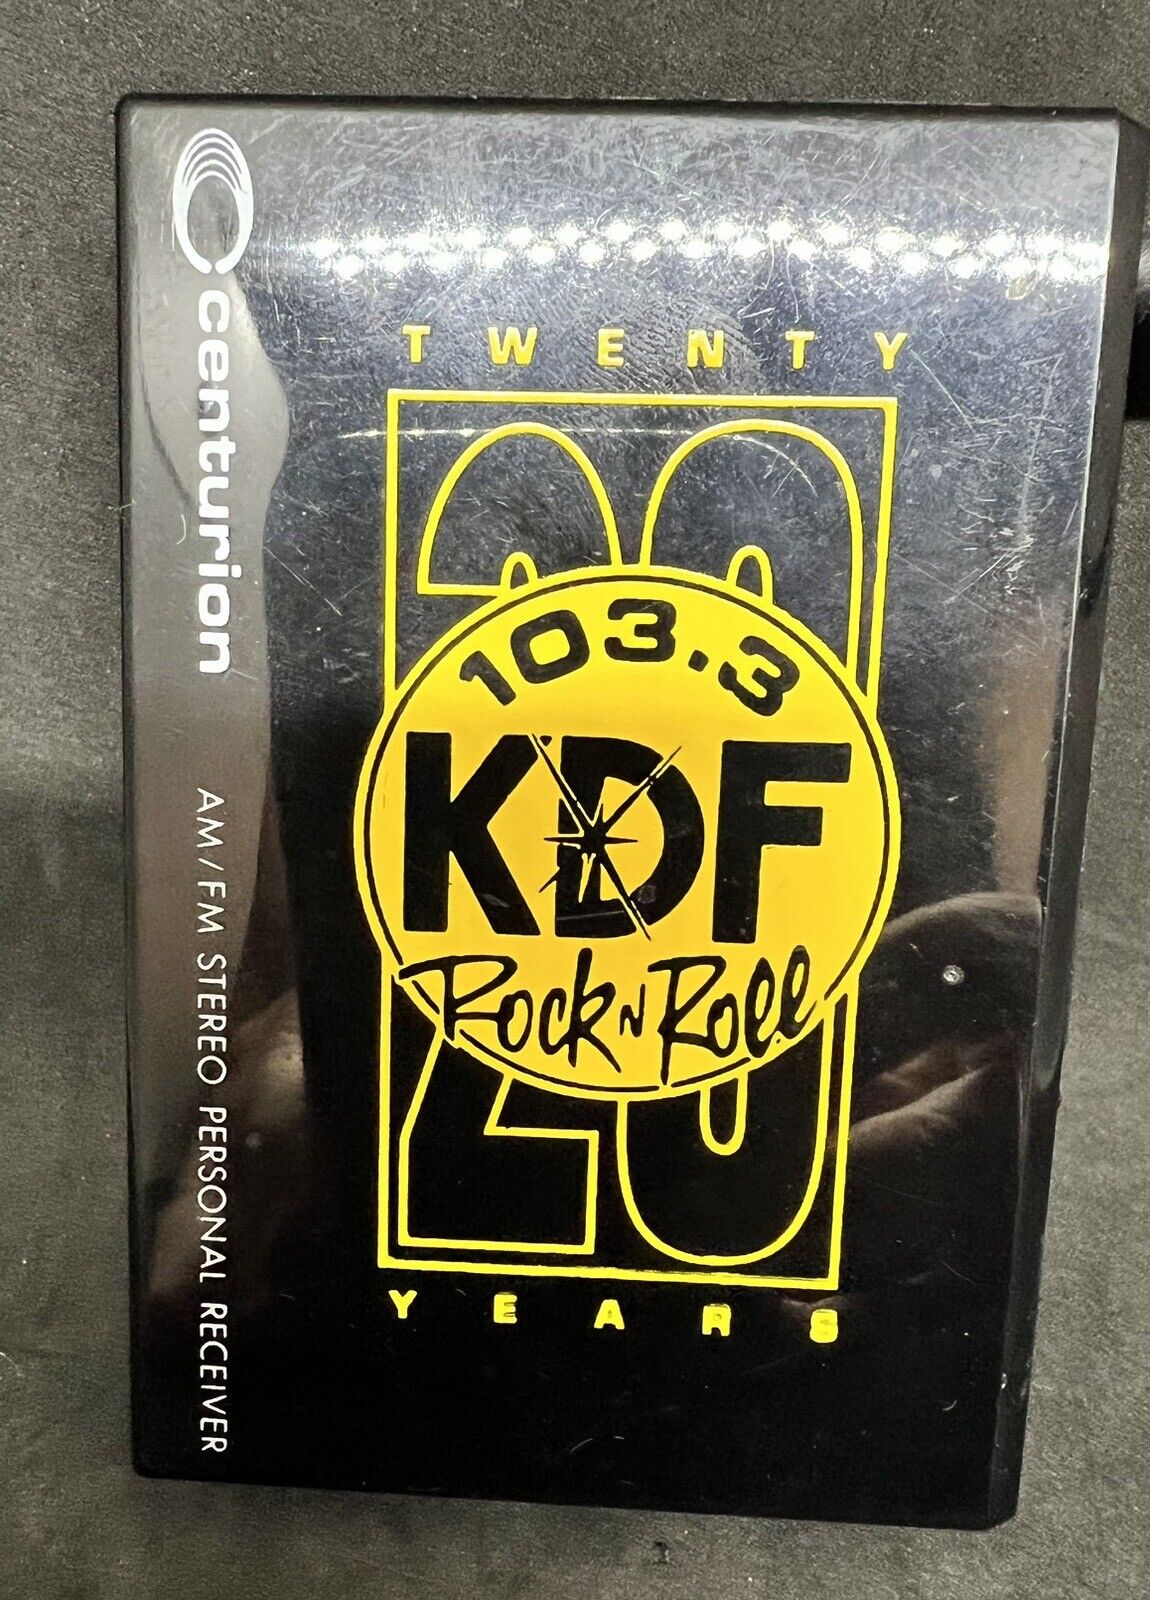 Vintage WKDF Radio “103.3 KDF Rock” AM/FM Walkman Style Radio W/Headphones Works